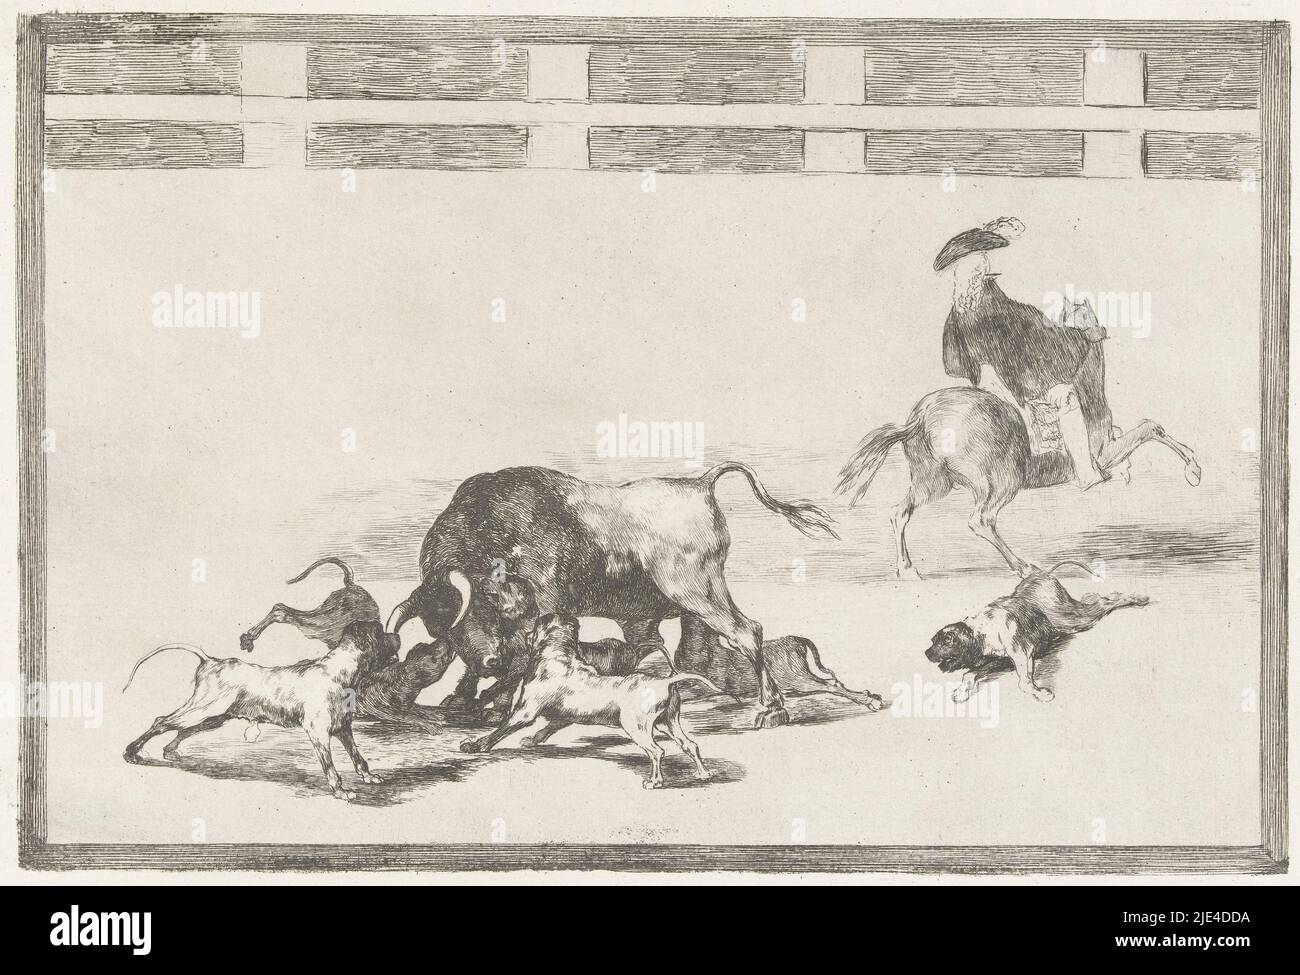 Bull attaqué par des chiens, Francisco de Goya, 1811 - 1816, cinq chiens attaquent un taureau dans une arène. Un chien est blessé au sol. Sur la droite, un homme à cheval, vu de l'arrière., imprimeur: Francisco de Goya, Francisco de Goya, Espagne, 1811 - 1816, papier, gravure, point sec, h 245 mm × l 355 mm Banque D'Images